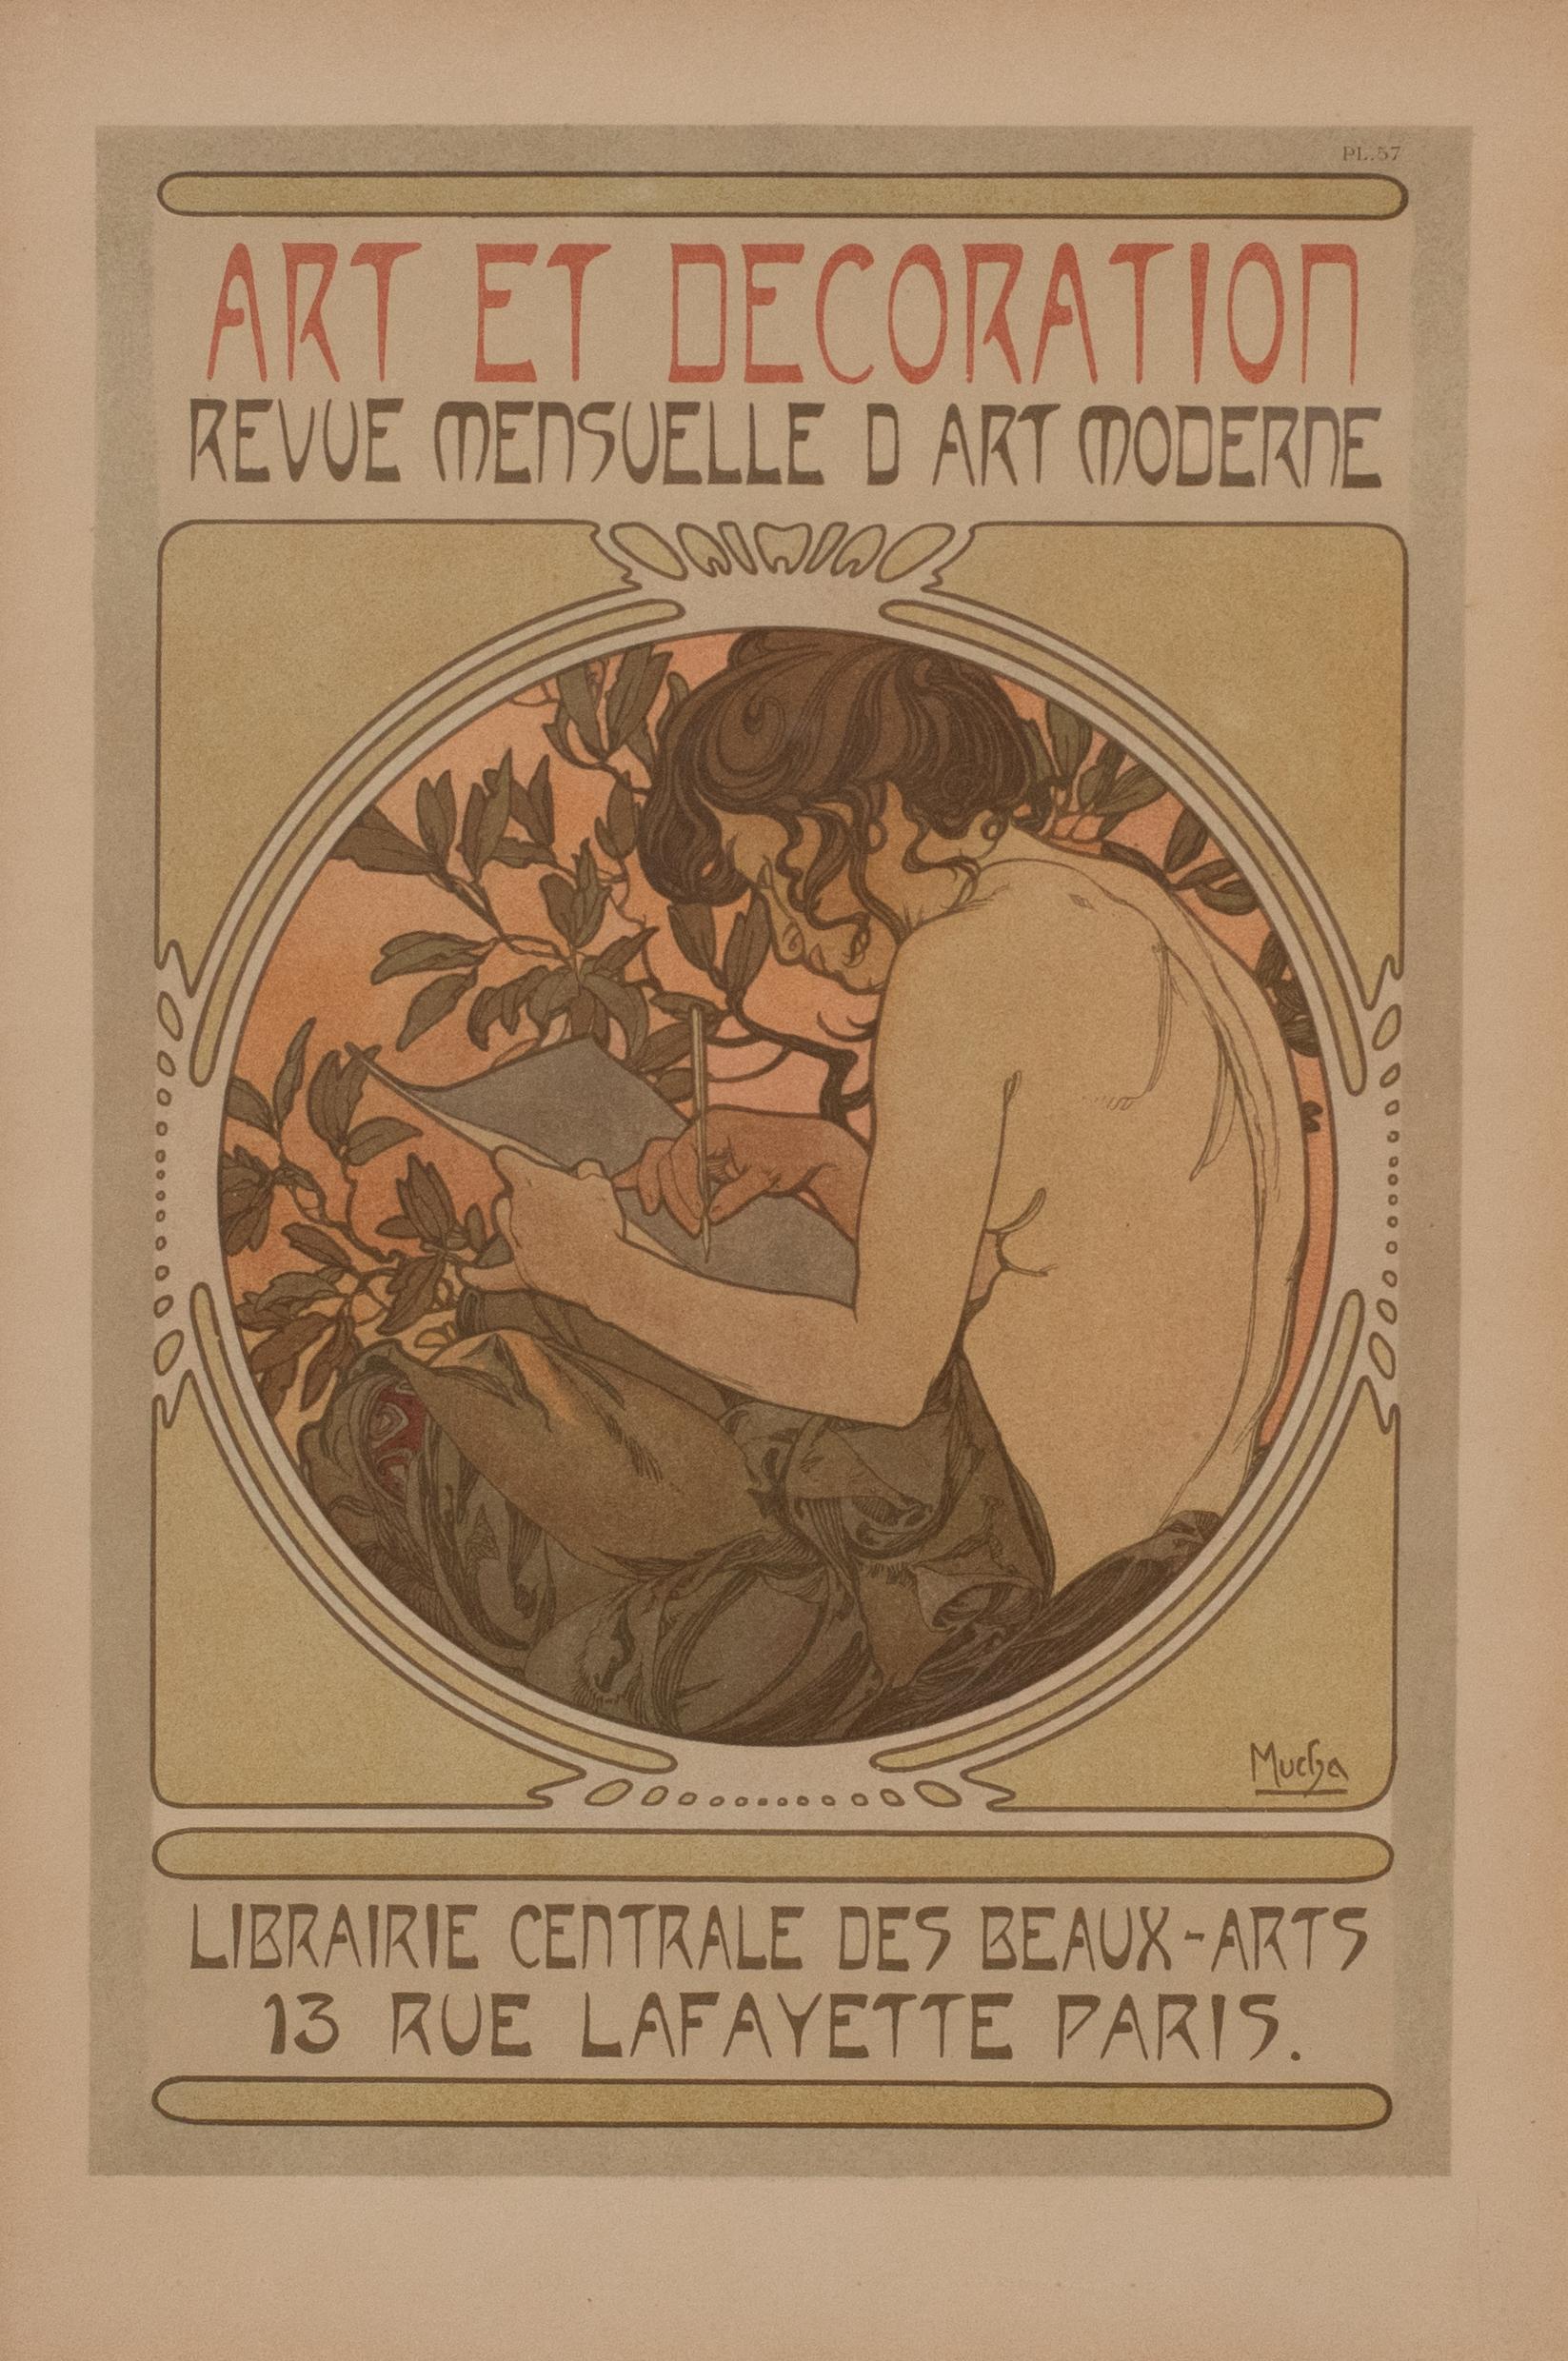 Planche 57 des "Documents décoratifs", publiés par la Librairie Centrale des Beaux-Arts à Paris, 1902.

Littérature : Rennert/Weill, A.7 p. 389, Lendl p.132-33 no.105, Grand Palais no 281-297.

Alphonse Mucha a principalement travaillé comme